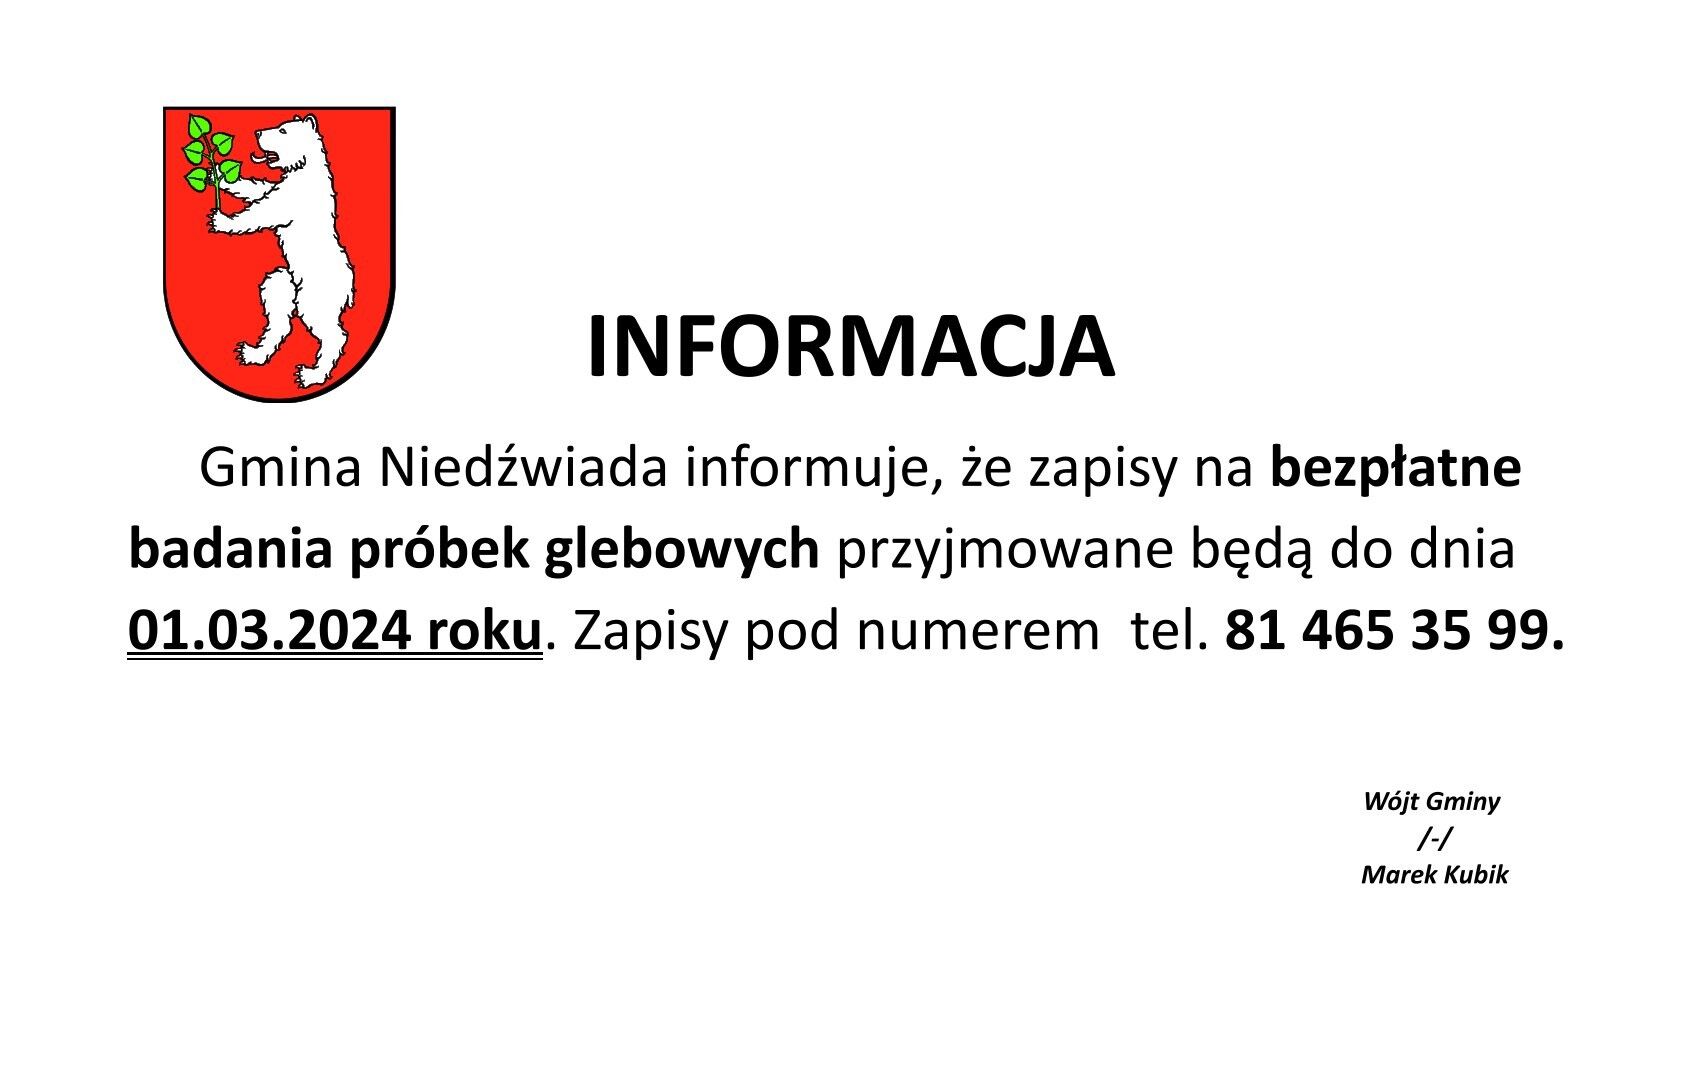 Plakat informacyjny z czerwonym herbem na białym tle po lewej stronie i czarnym tekstem po prawej informującym o bezpłatnych badaniach próbek glebowych w gminie Nieźwiada, z datą i numerem telefonu.